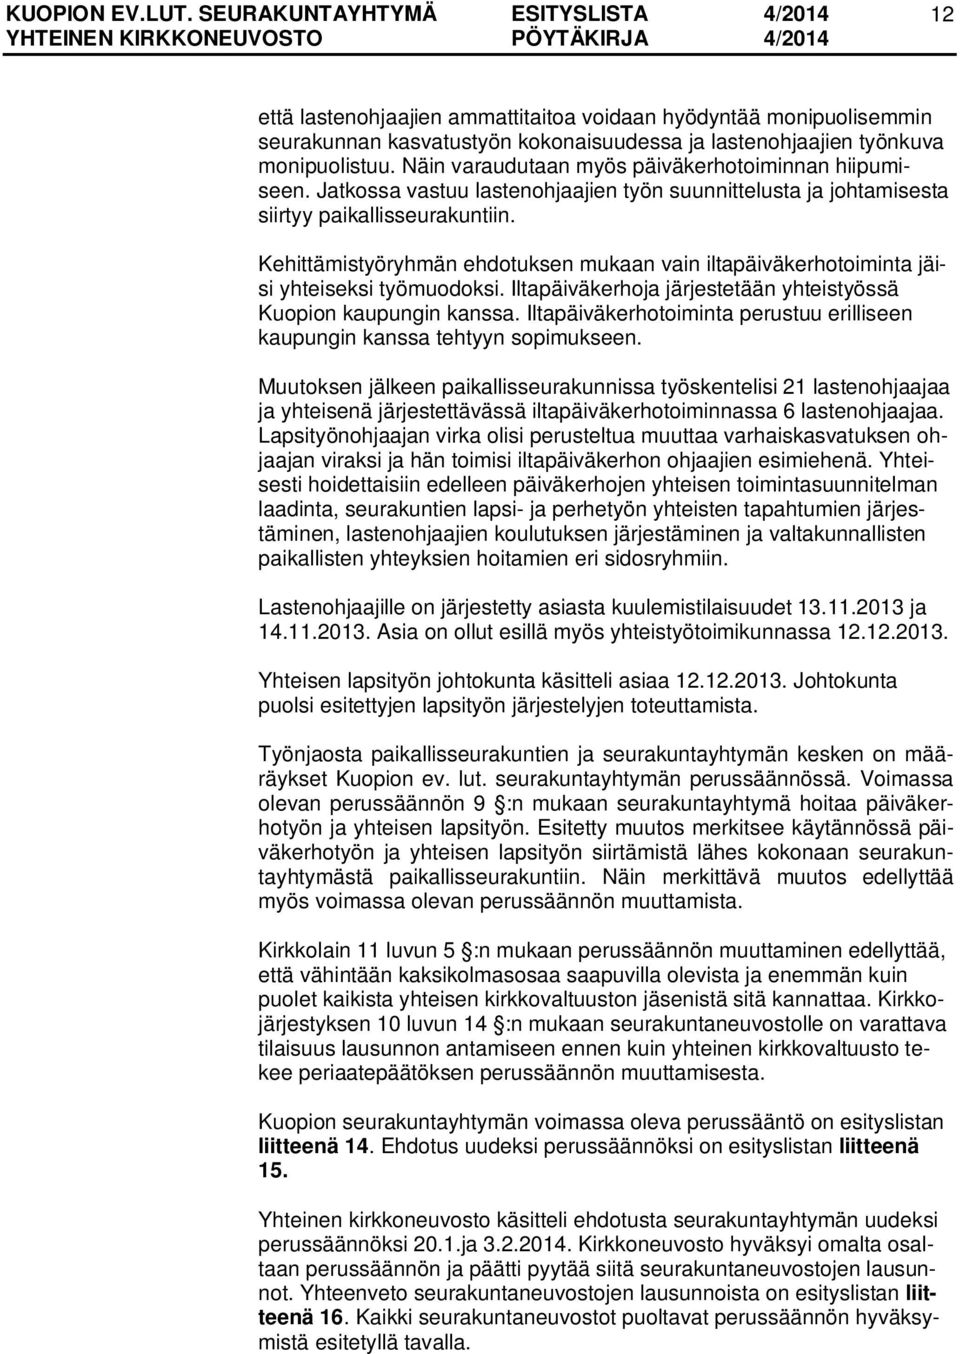 Kehittämistyöryhmän ehdotuksen mukaan vain iltapäiväkerhotoiminta jäisi yhteiseksi työmuodoksi. Iltapäiväkerhoja järjestetään yhteistyössä Kuopion kaupungin kanssa.